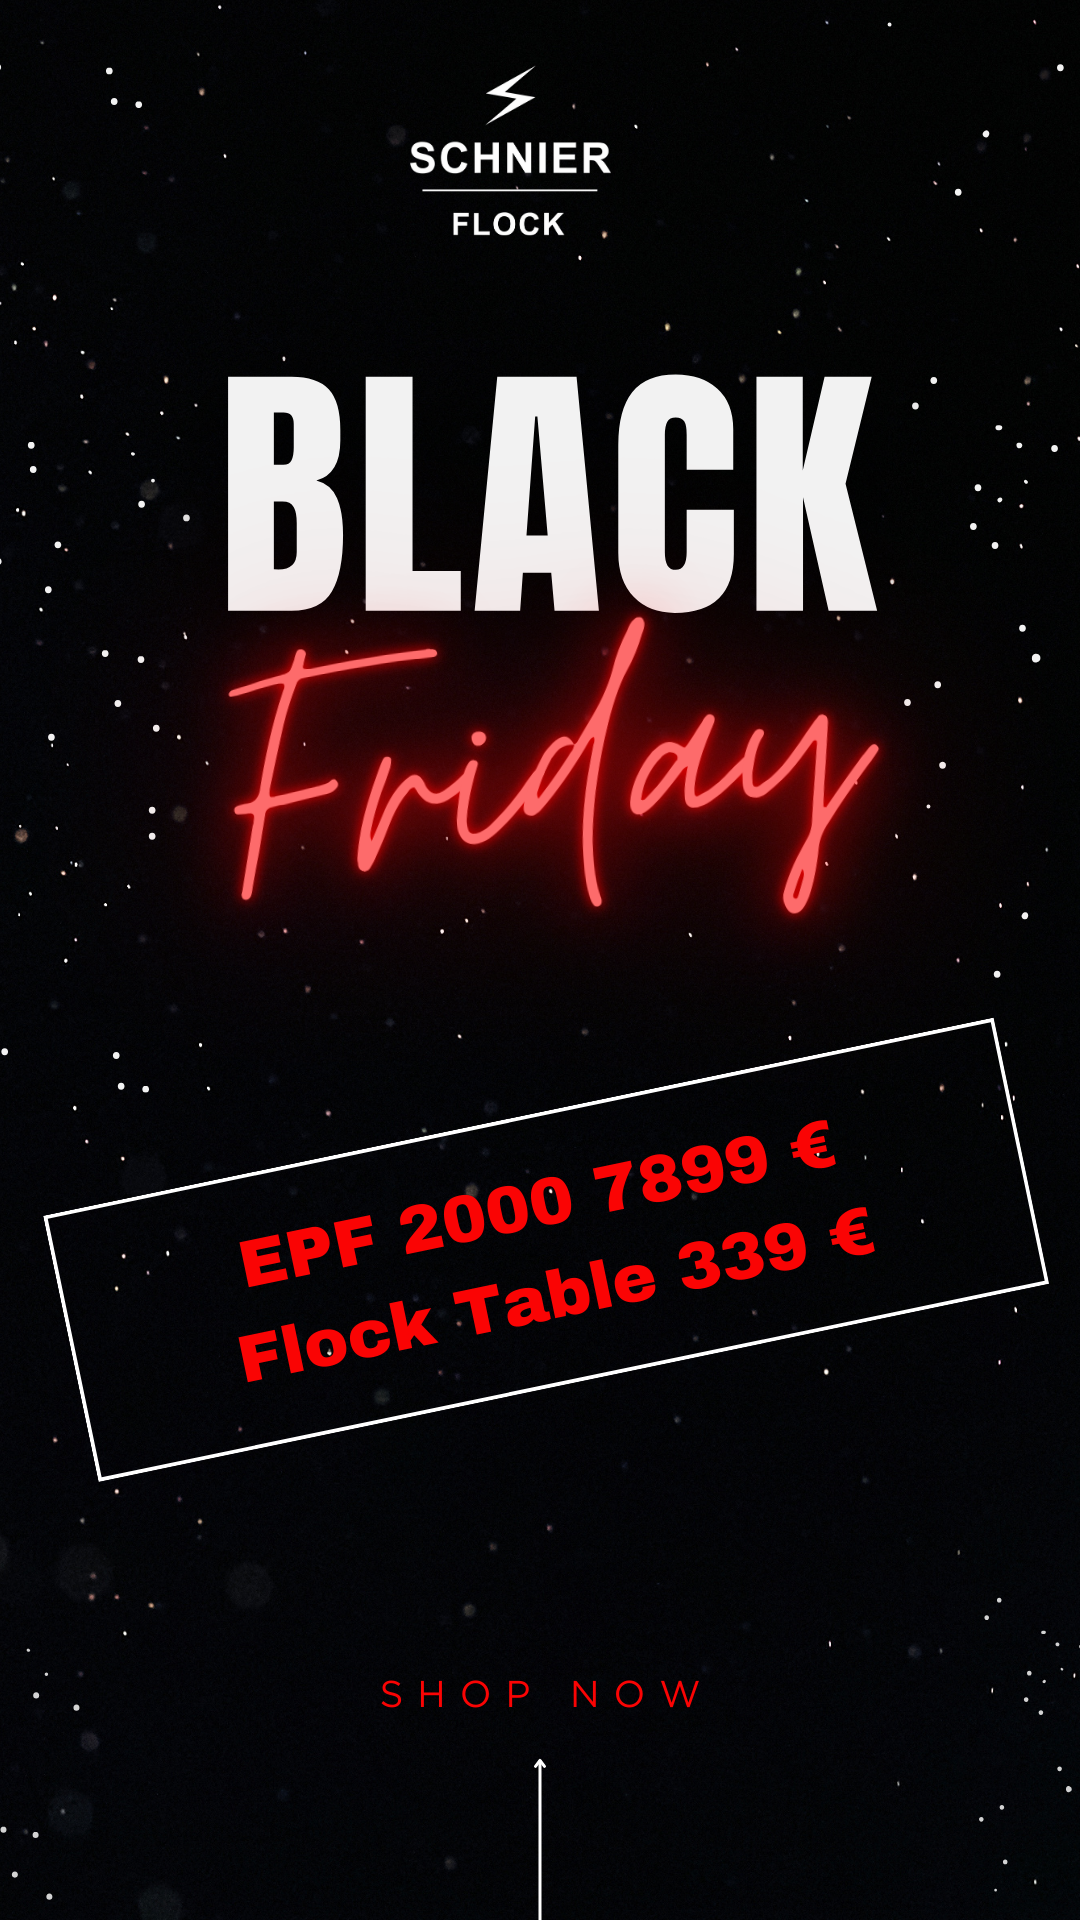 Black Friday Aktion mit EPF 2000 und Flock Tisch zum Sonderpreis